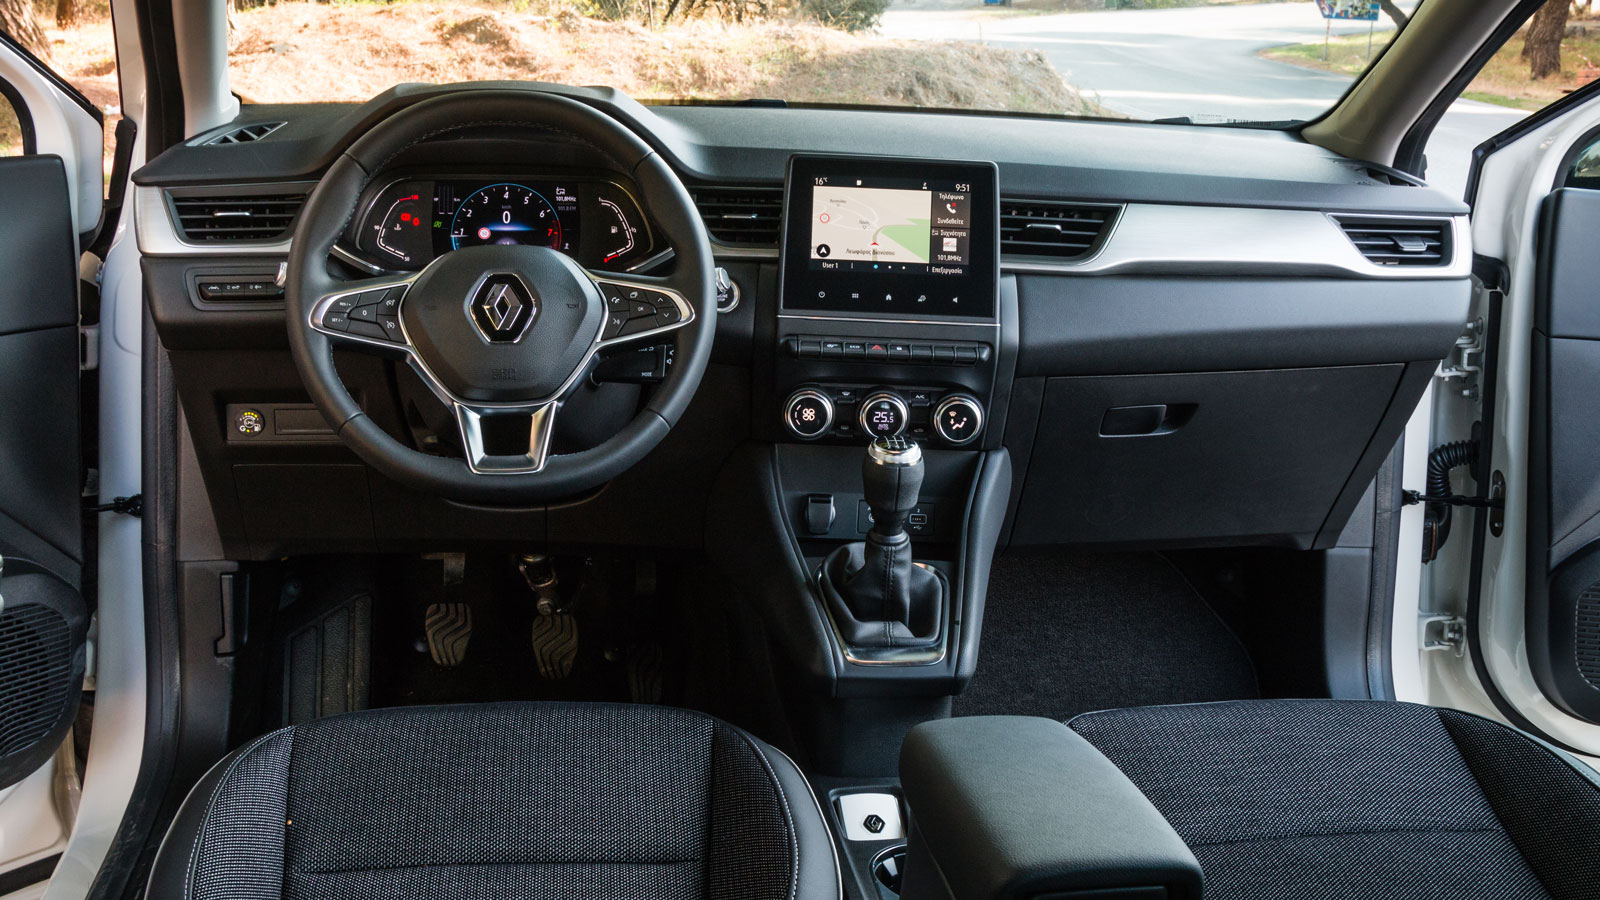 Το εσωτερικό του Renault Captur είναι εργονομικό και πρακτικό. Τα υλικά έχουν προσεγμένο φινίρισμα